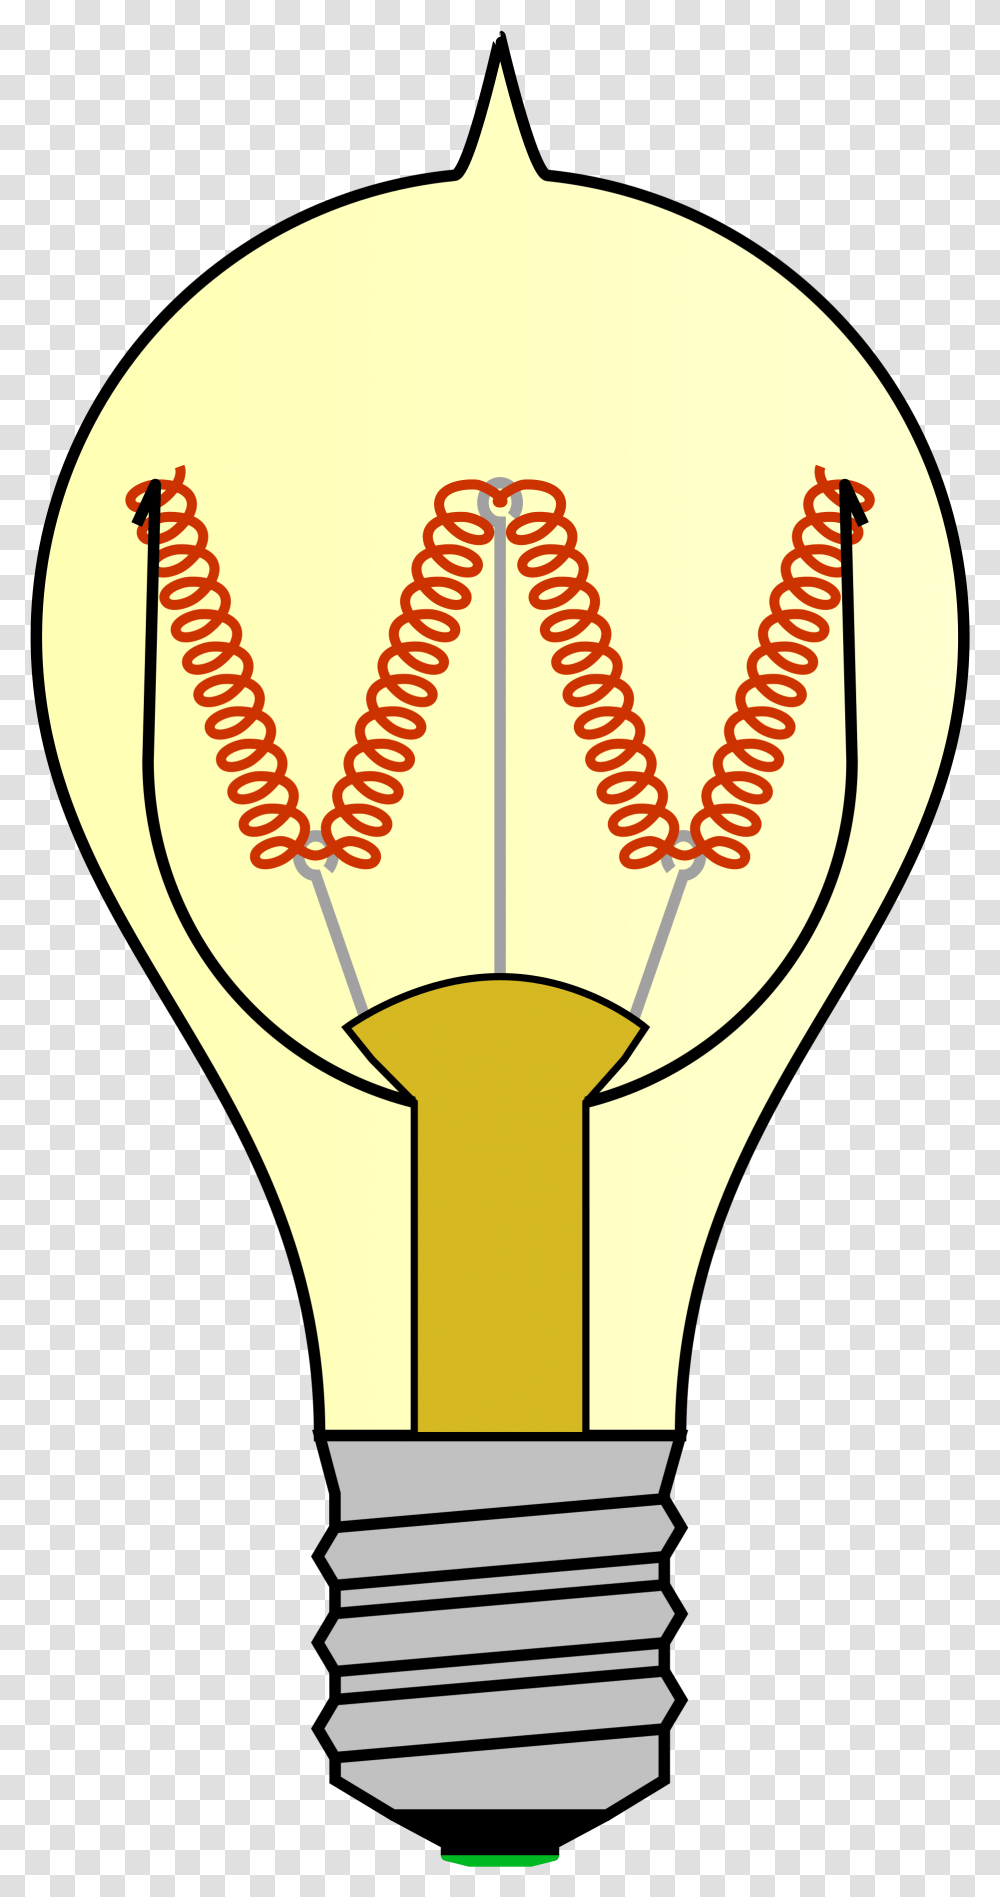 Incandescent Old Light Bulb Emblem Cartoon Bulb Diagram, Zipper, Lamp, Lightbulb Transparent Png